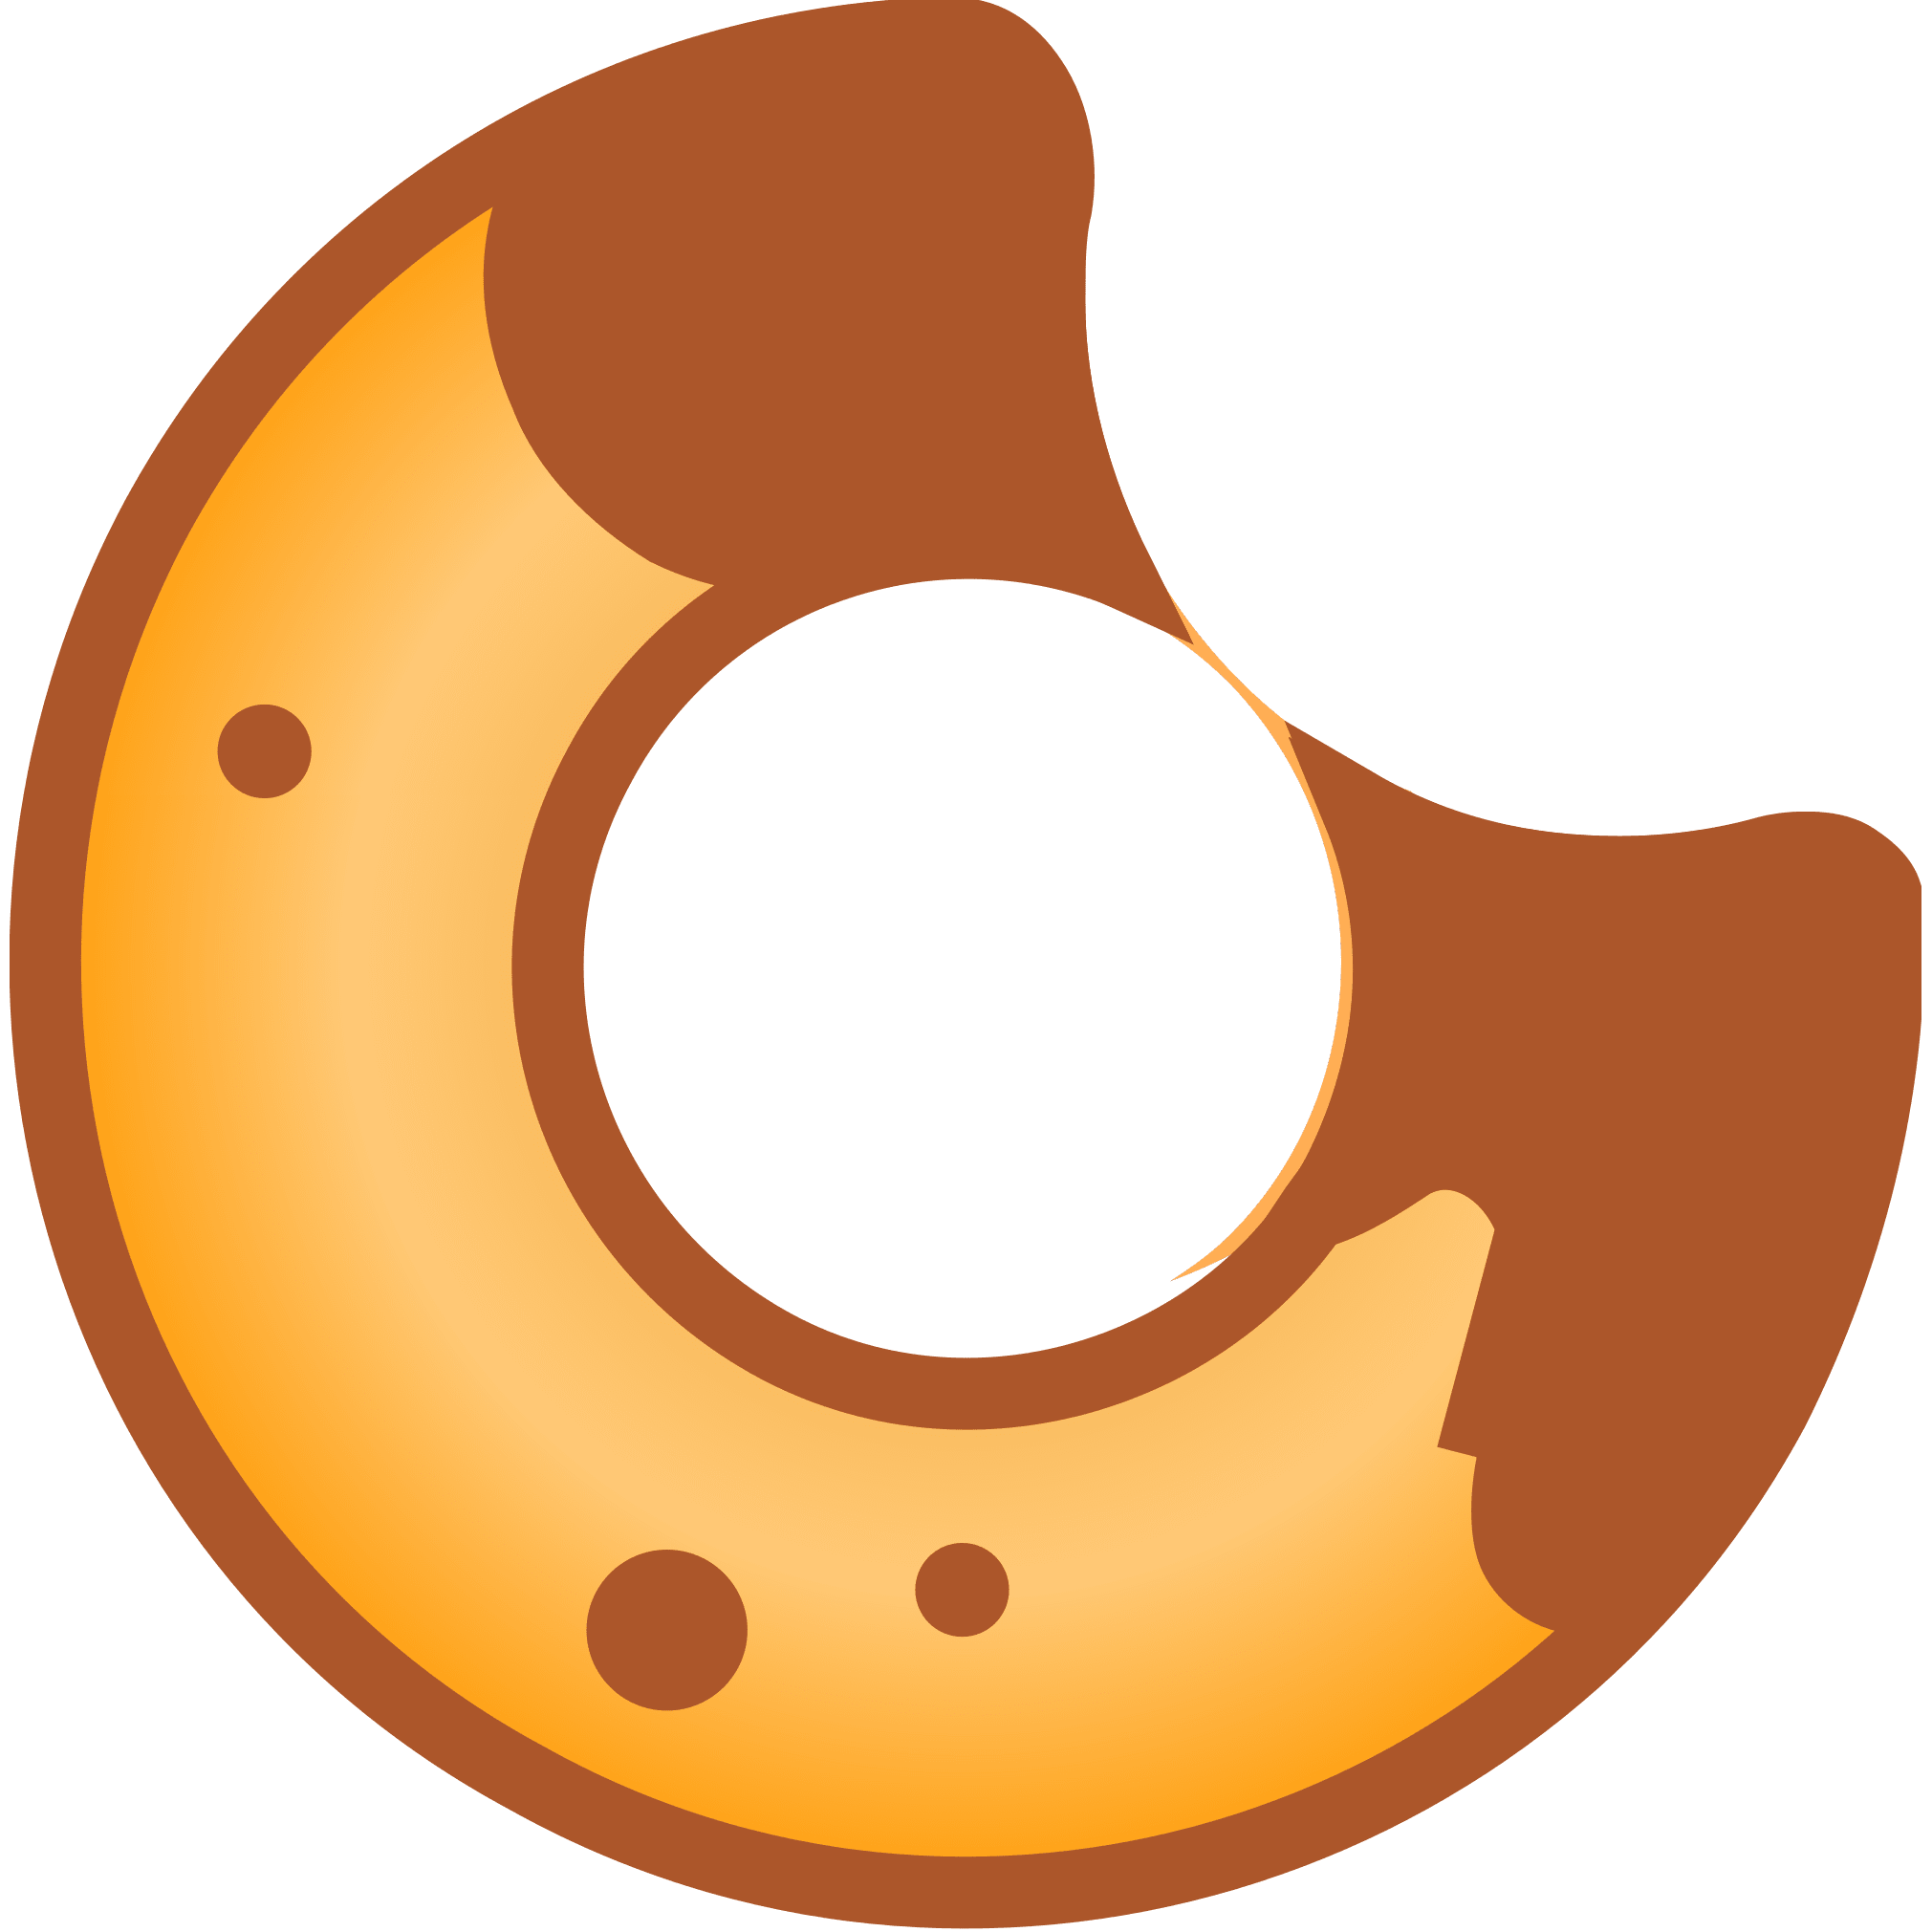 BakeryToken logo in png format